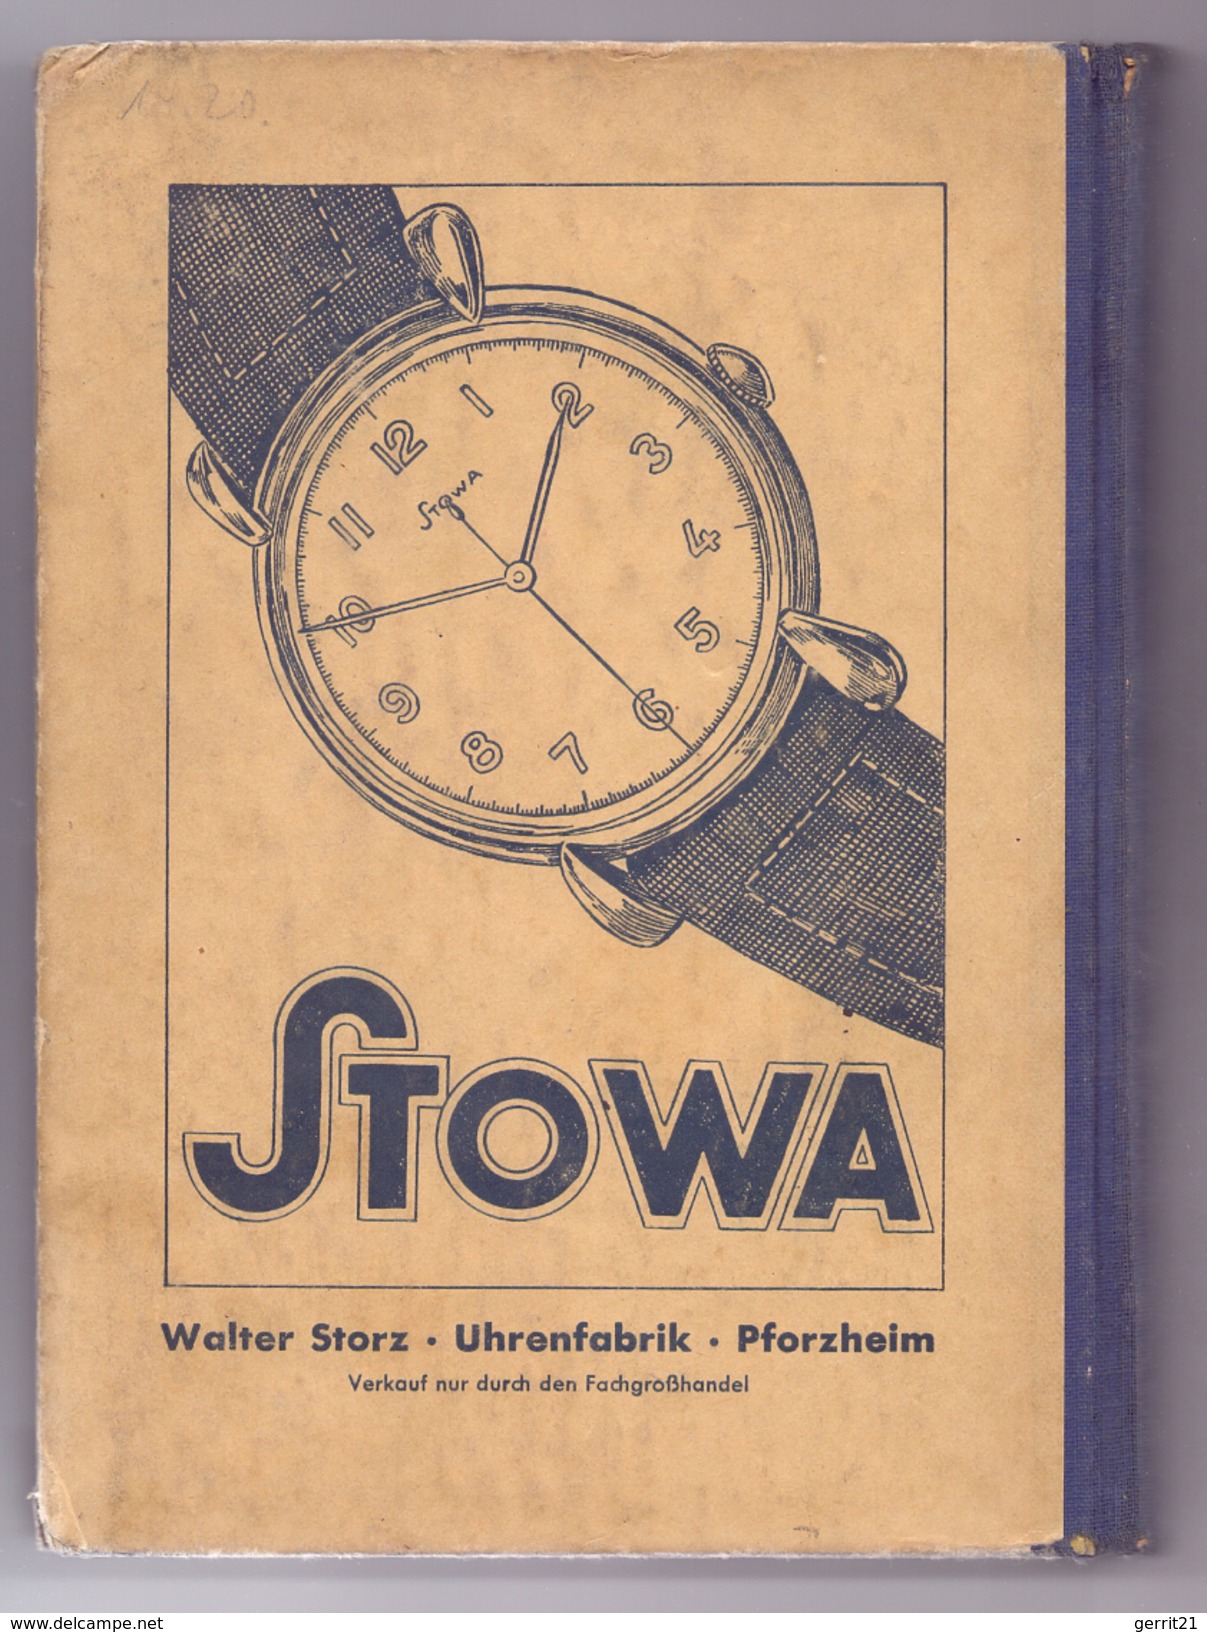 LEHRBUCH Für Das Uhrmacher-Handwerk, Band II,Verlag Knapp, Düsseld., 1951, 424 Seiten, 350 Abb., Einband Gebrauchsspuren - Techniek